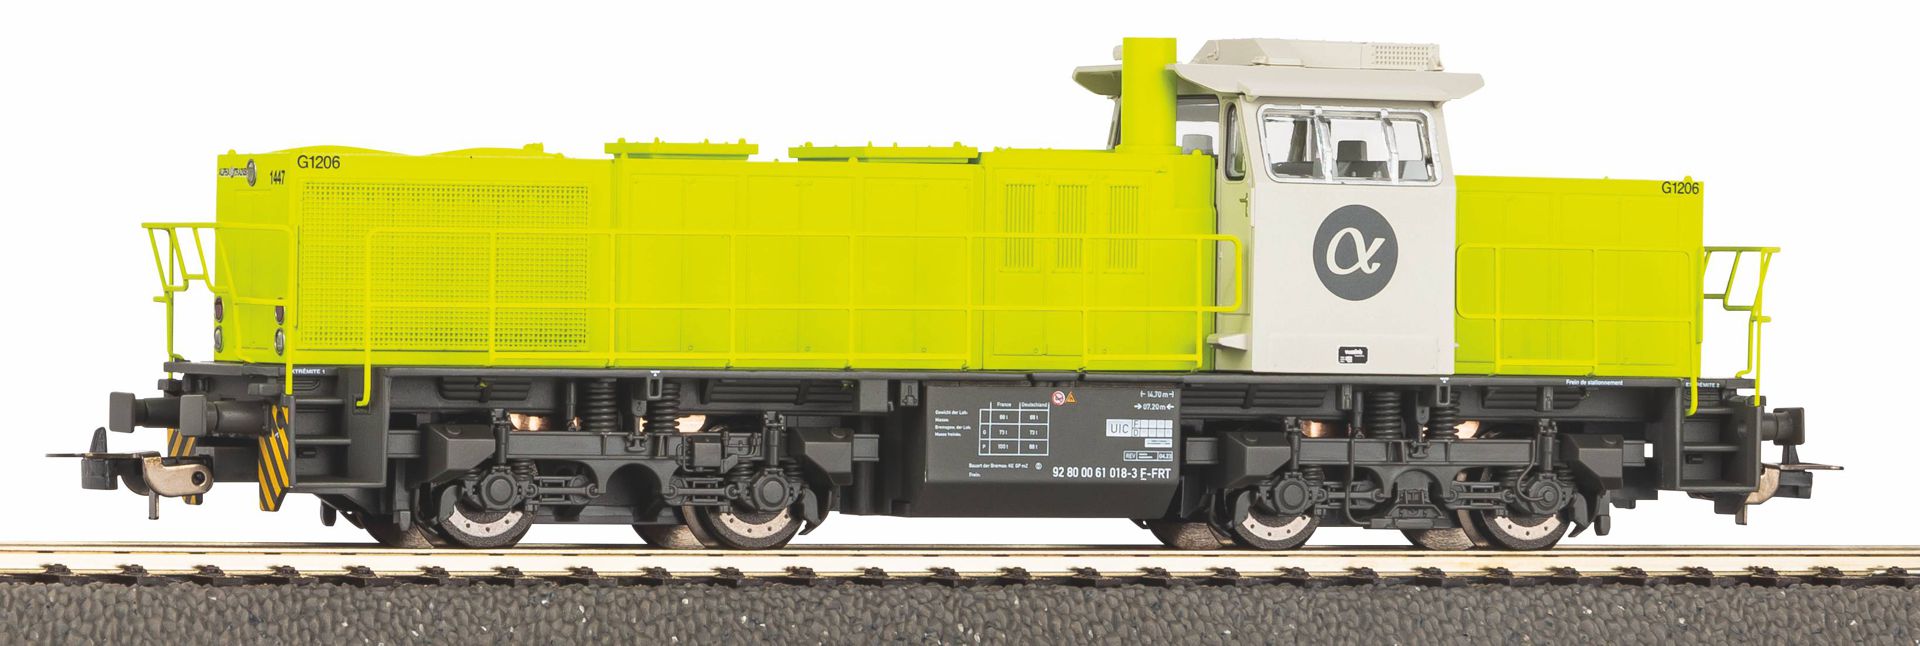 Piko 59165 - Diesellok G 1206, Alpha Trains, Ep.VI